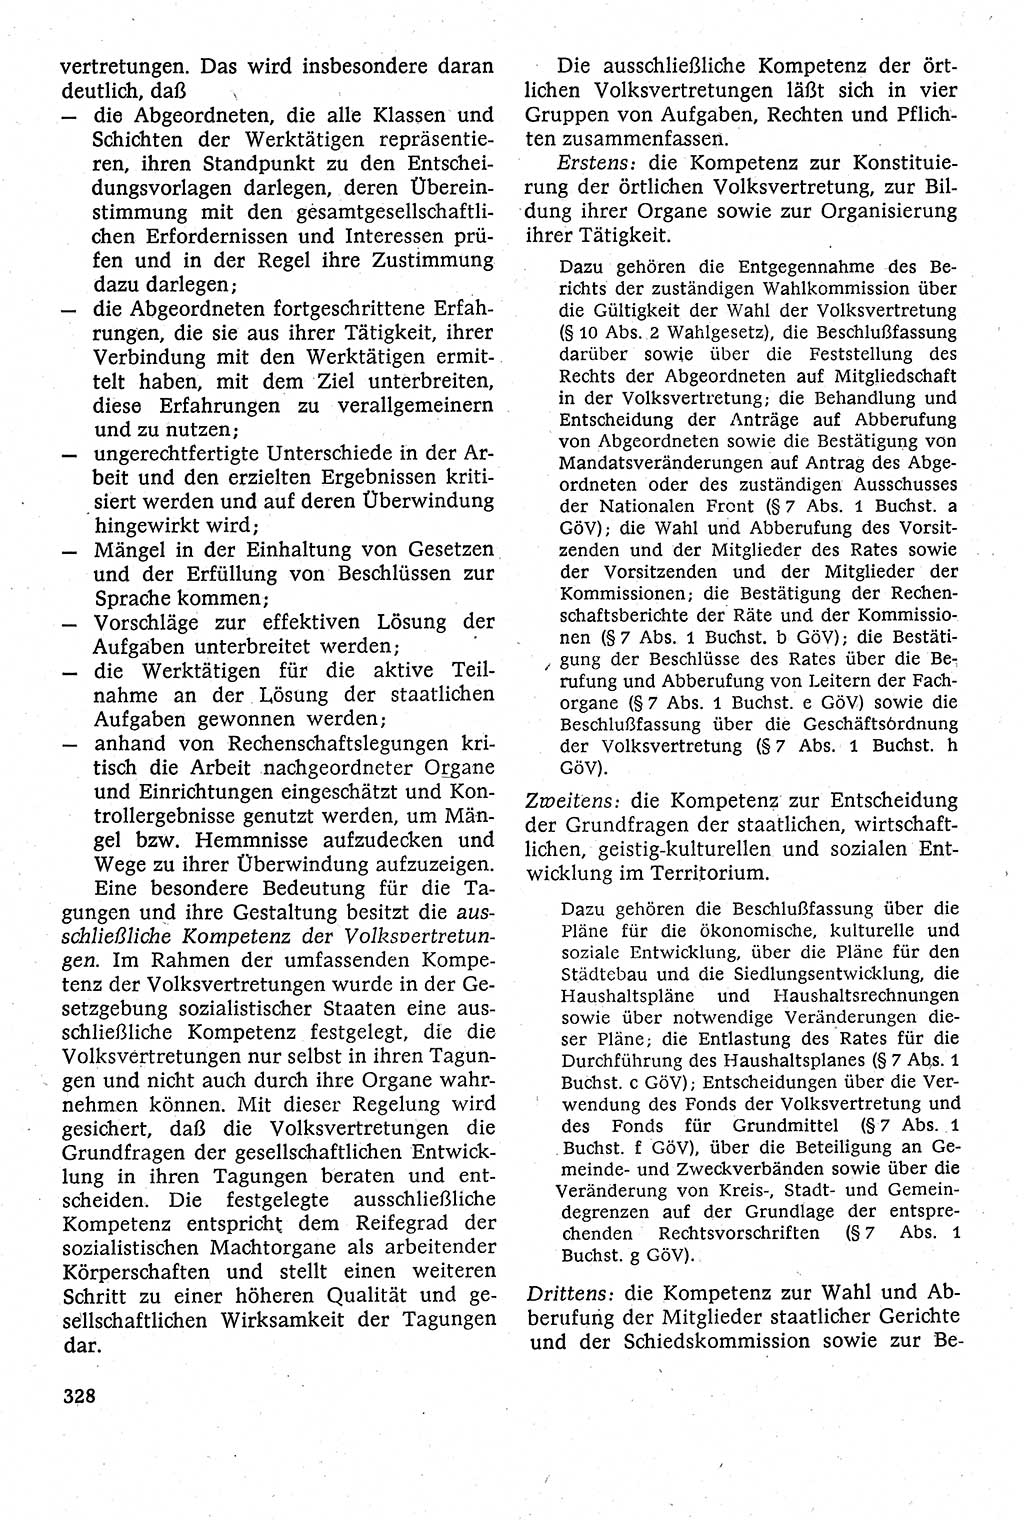 Staatsrecht der DDR [Deutsche Demokratische Republik (DDR)], Lehrbuch 1984, Seite 328 (St.-R. DDR Lb. 1984, S. 328)